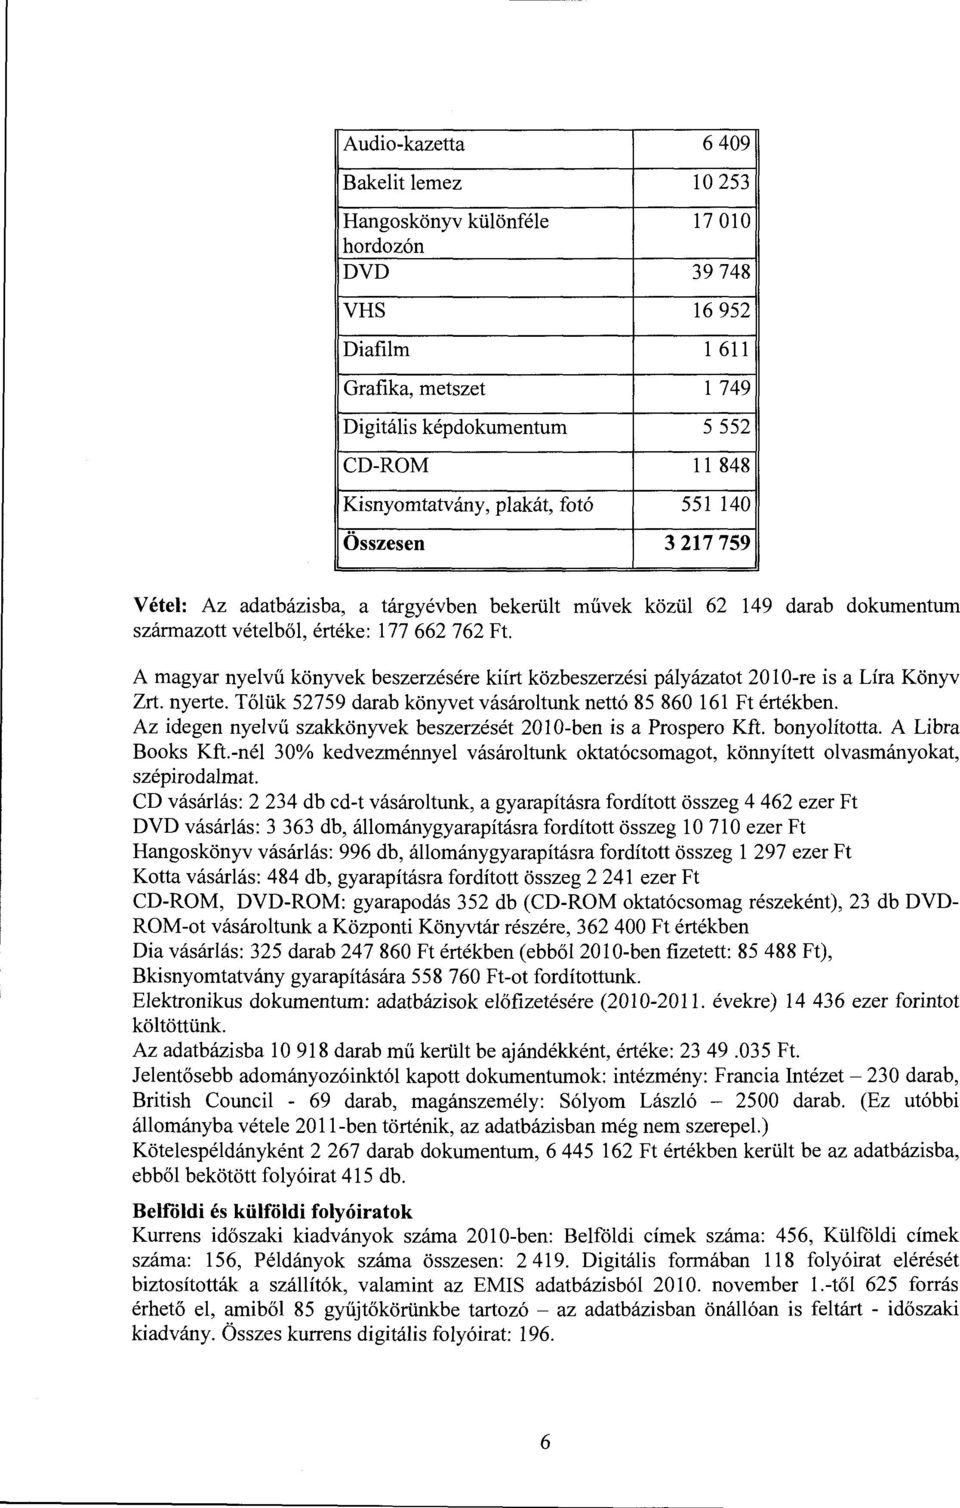 közül 62 149 darab dokumentum A magyar nyelvű könyvek beszerzésére kiírt közbeszerzési pályázatot 20 l O-re is a Líra Könyv Zrt. nyerte.